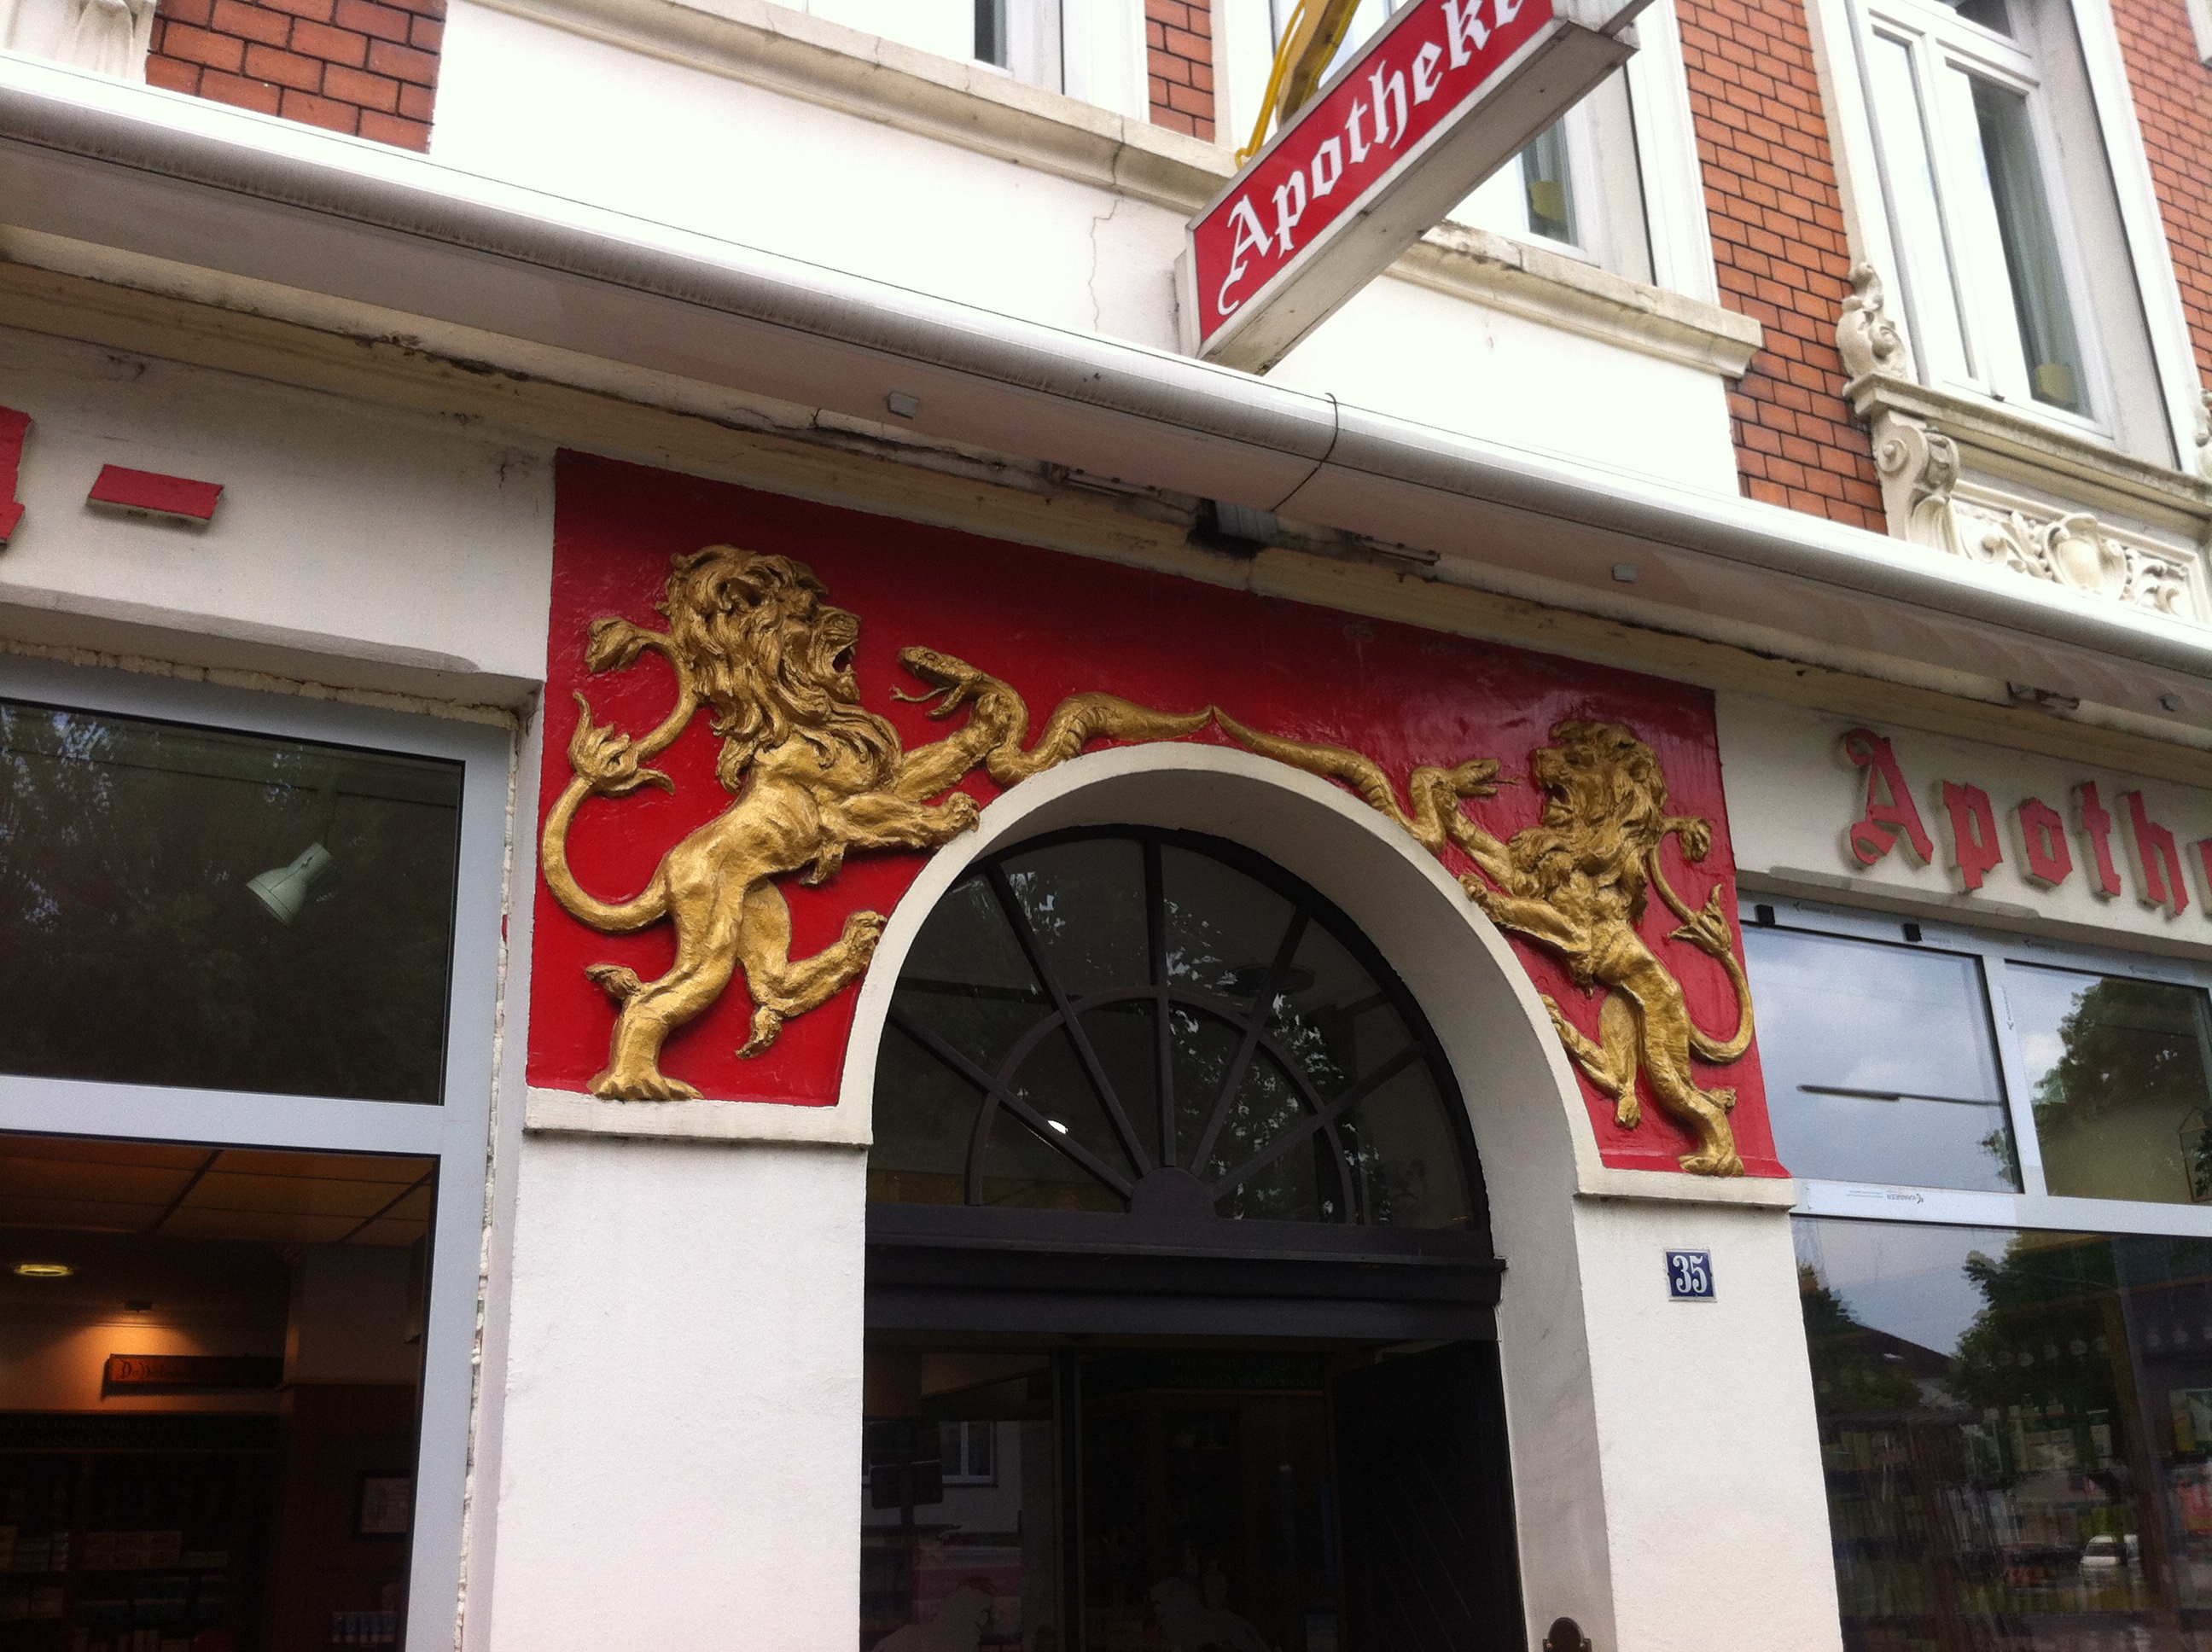 Schöne alte Häuser in Oldenburg - hier die Löwen Apotheke - toller Eingang